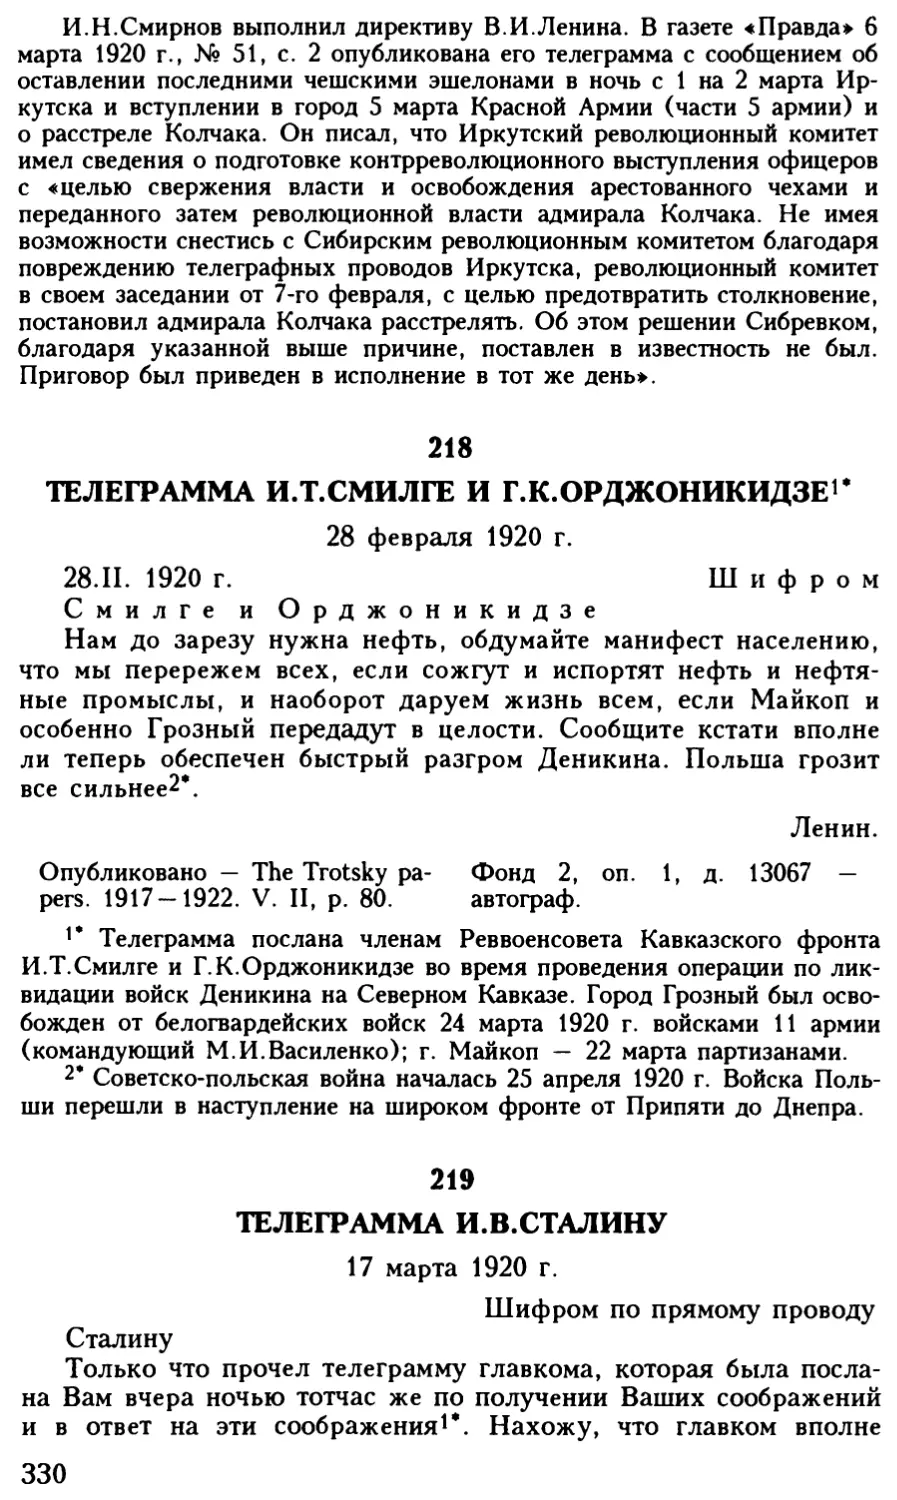 218. Телеграмма И.Т.Смилге и Г.К.Орджоникидзе. 28 февраля 1920 г
219. Телеграмма И.В.Сталину. 17 марта 1920 г